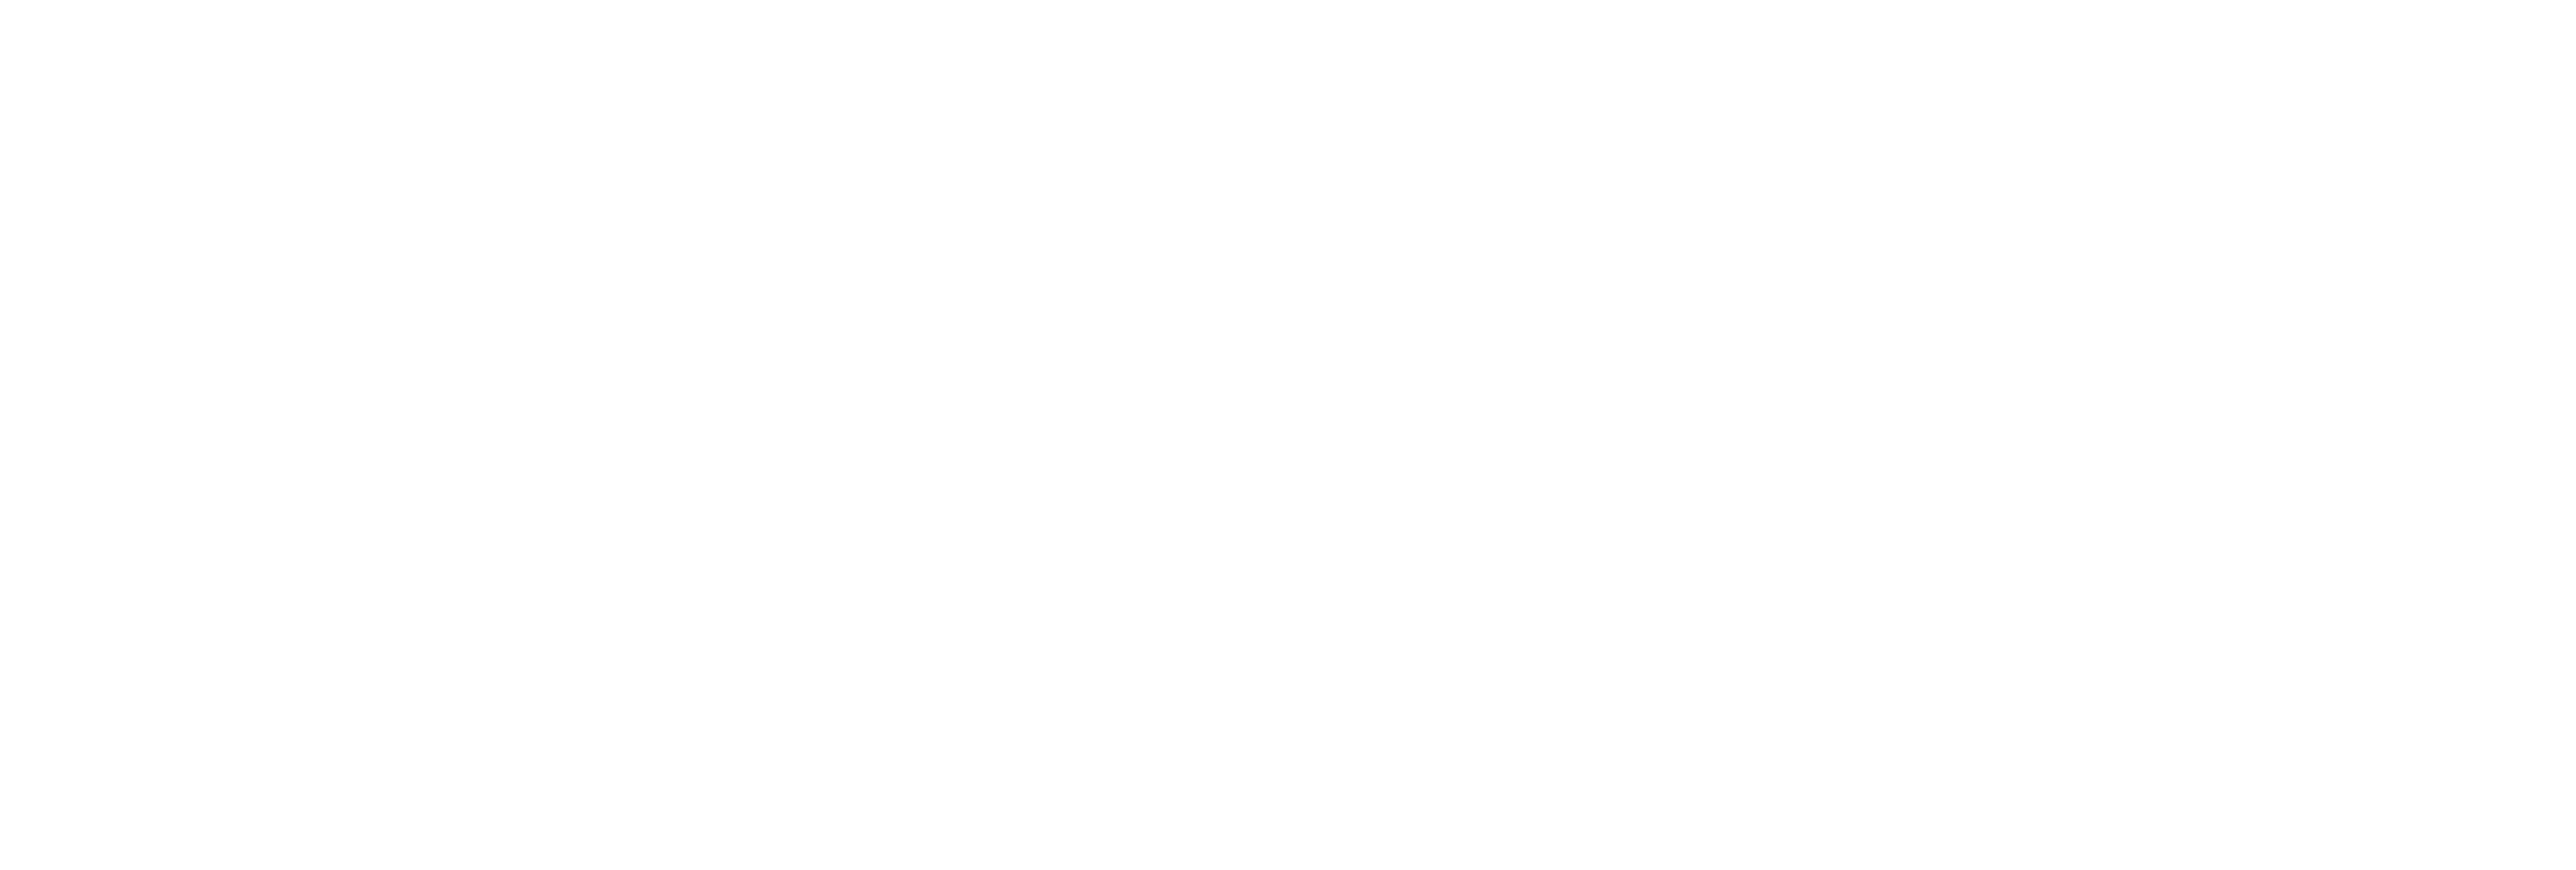 AniCura Centre d'Imagerie Médicale Vetimacs à Bruxelles logo